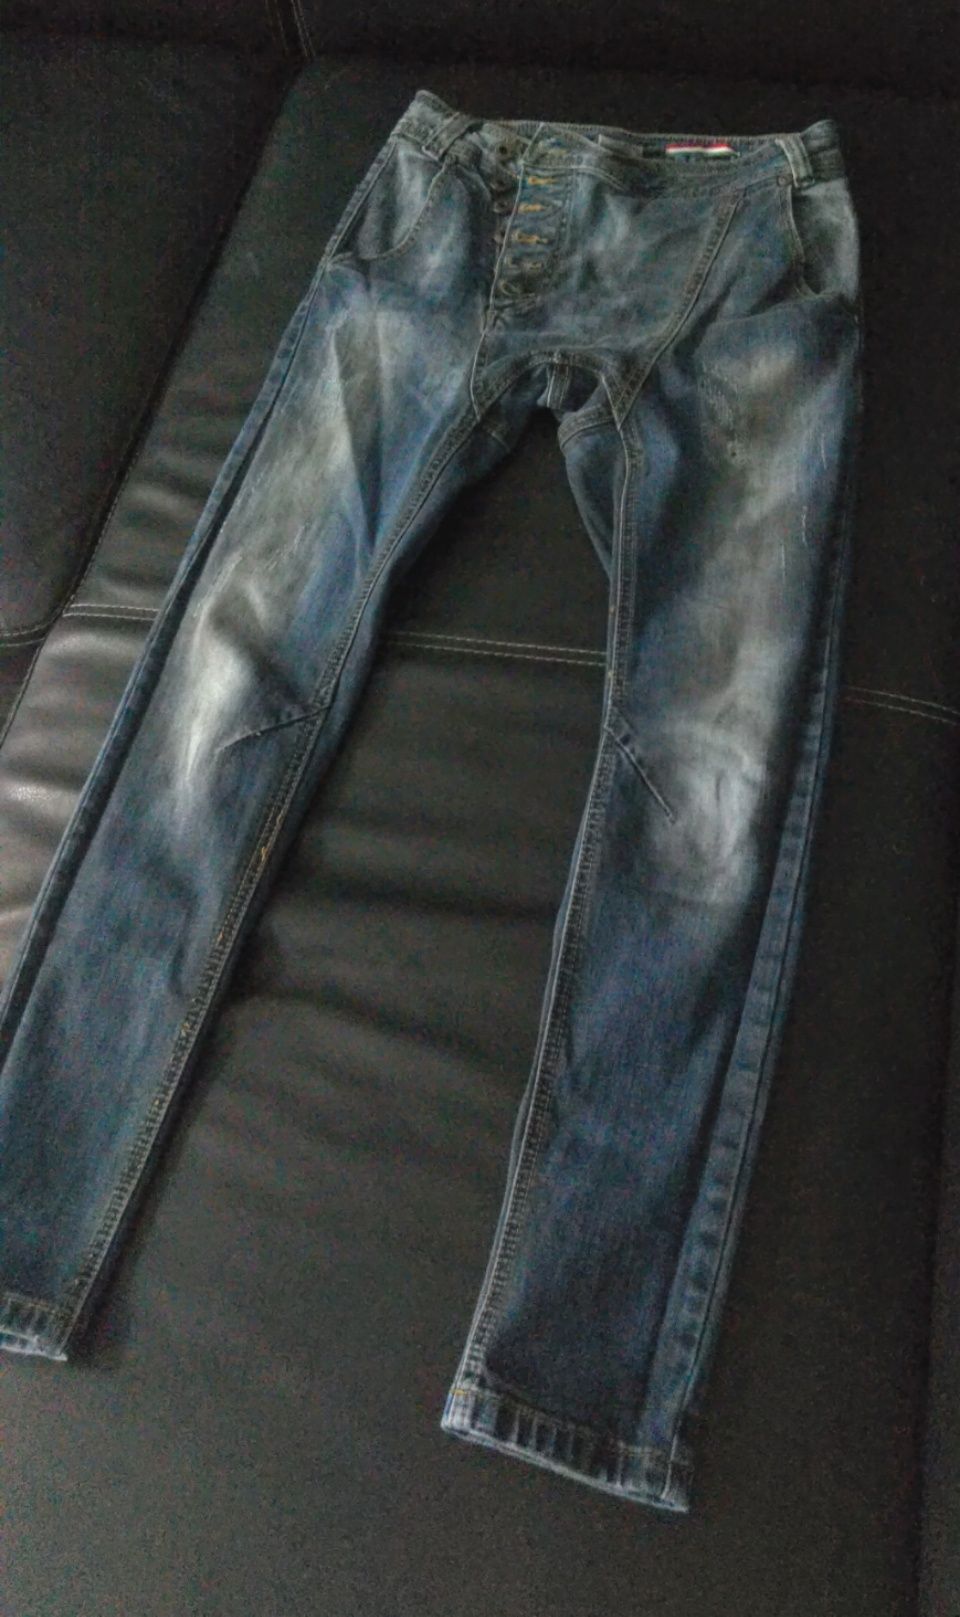 Spodnie jeans włoskiej jakości